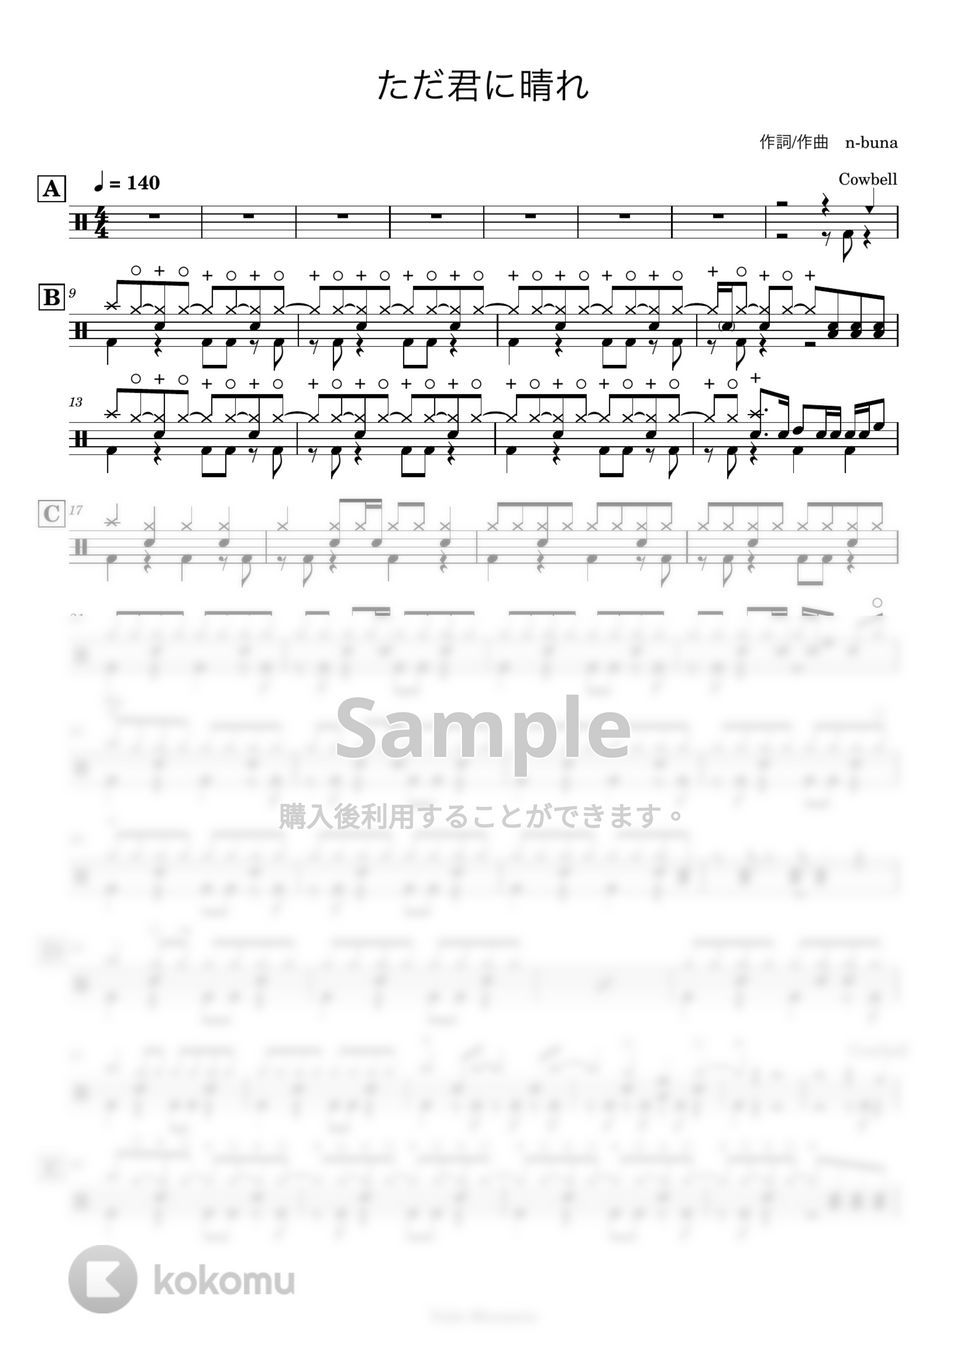 ヨルシカ - 【ドラム譜】ただ君に晴れ【完コピ】 by Taiki Mizumoto